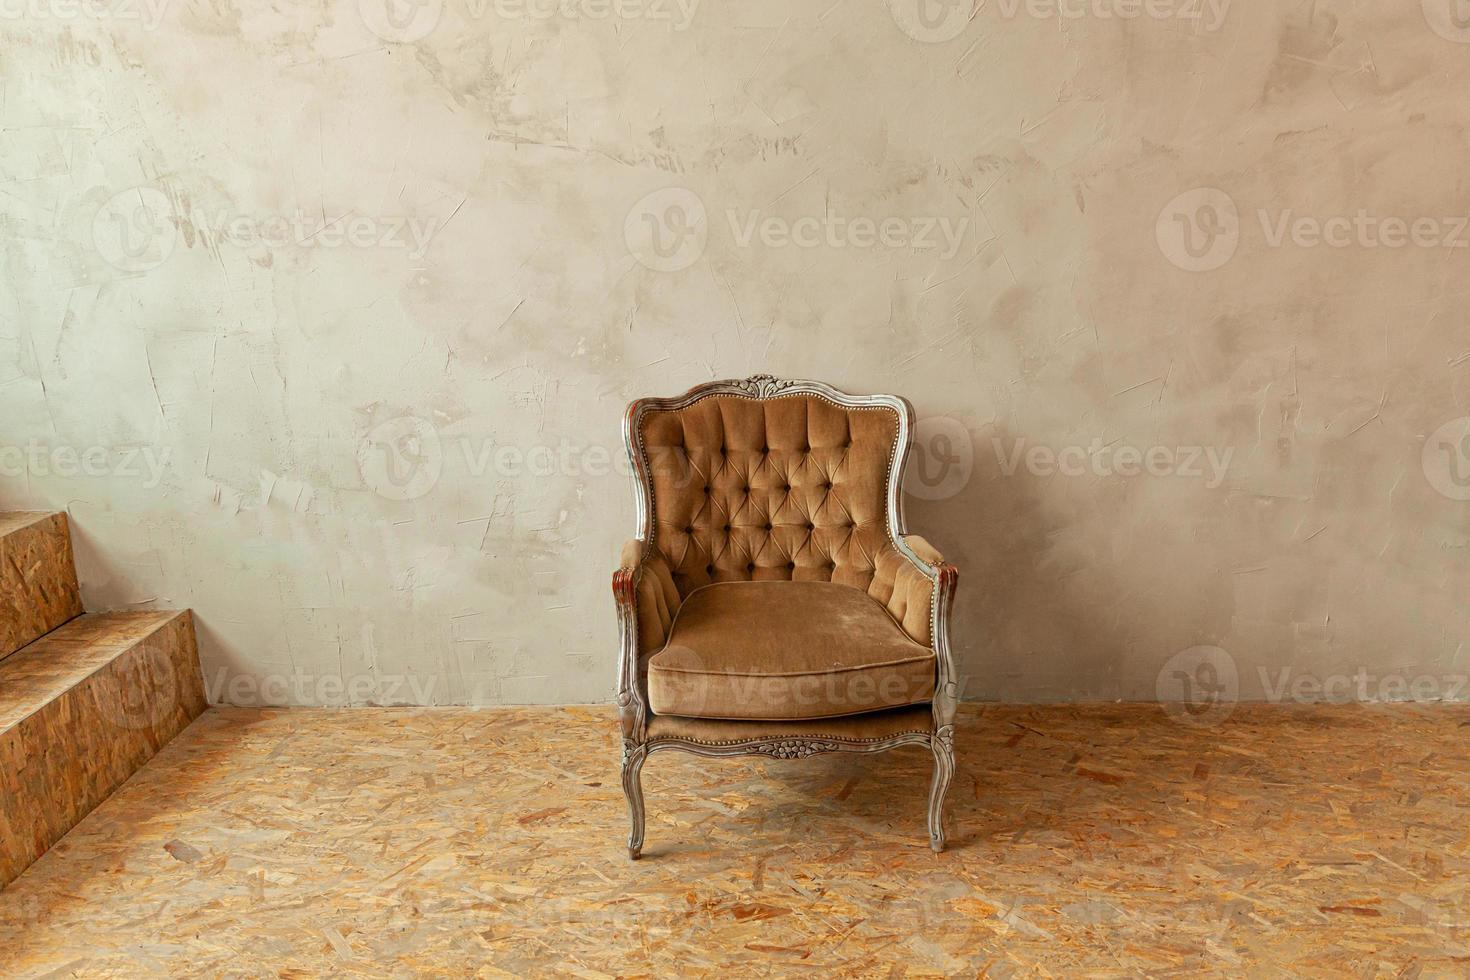 schöner luxus klassischer biege sauberer innenraum im grunge-stil mit braunem barocksessel. vintage antiker braungrauer stuhl neben der wand. minimalistisches Wohndesign. foto